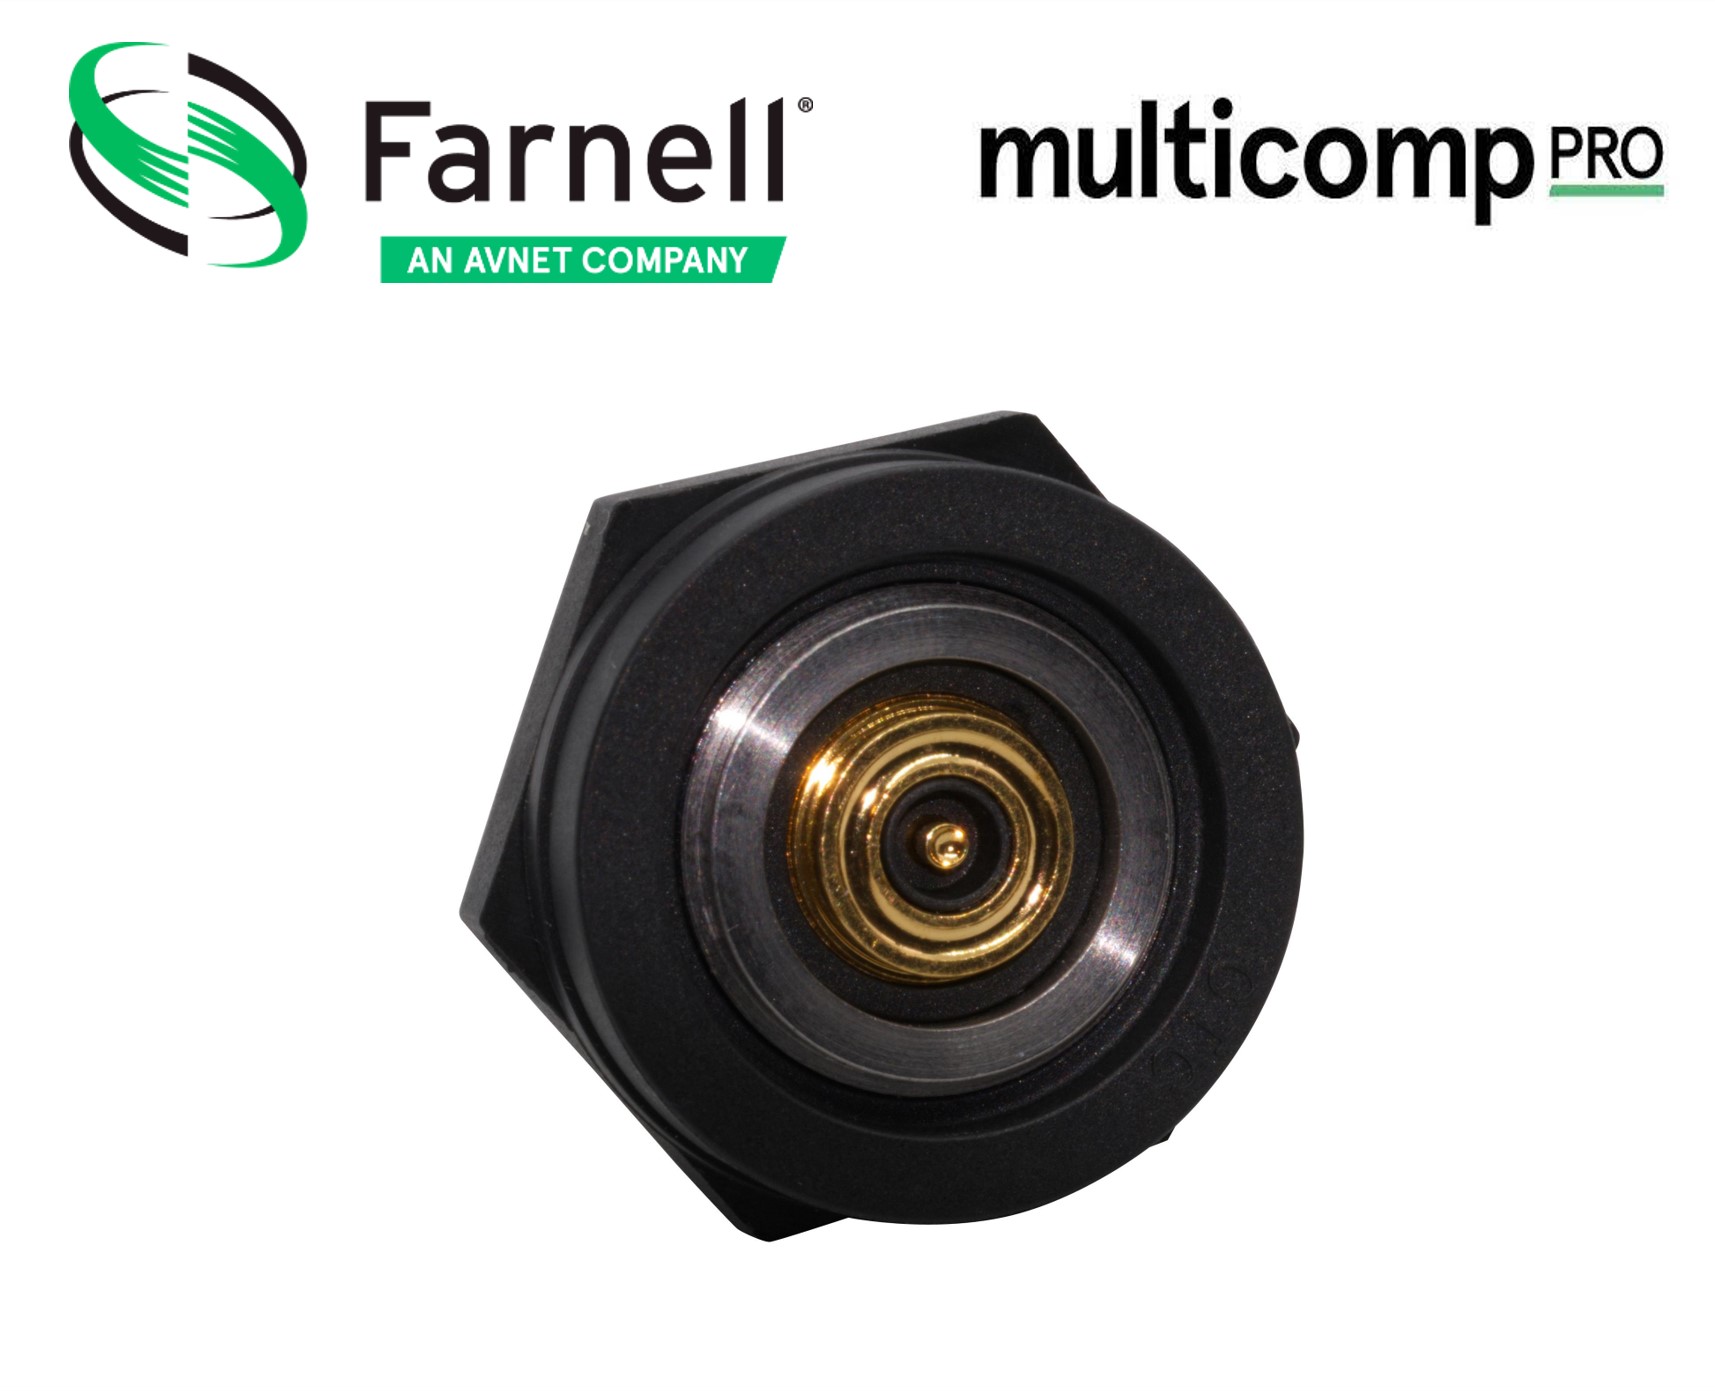 Farnell lance les connecteurs magnétiques innovants de Multicomp Pro pour une utilisation basse tension